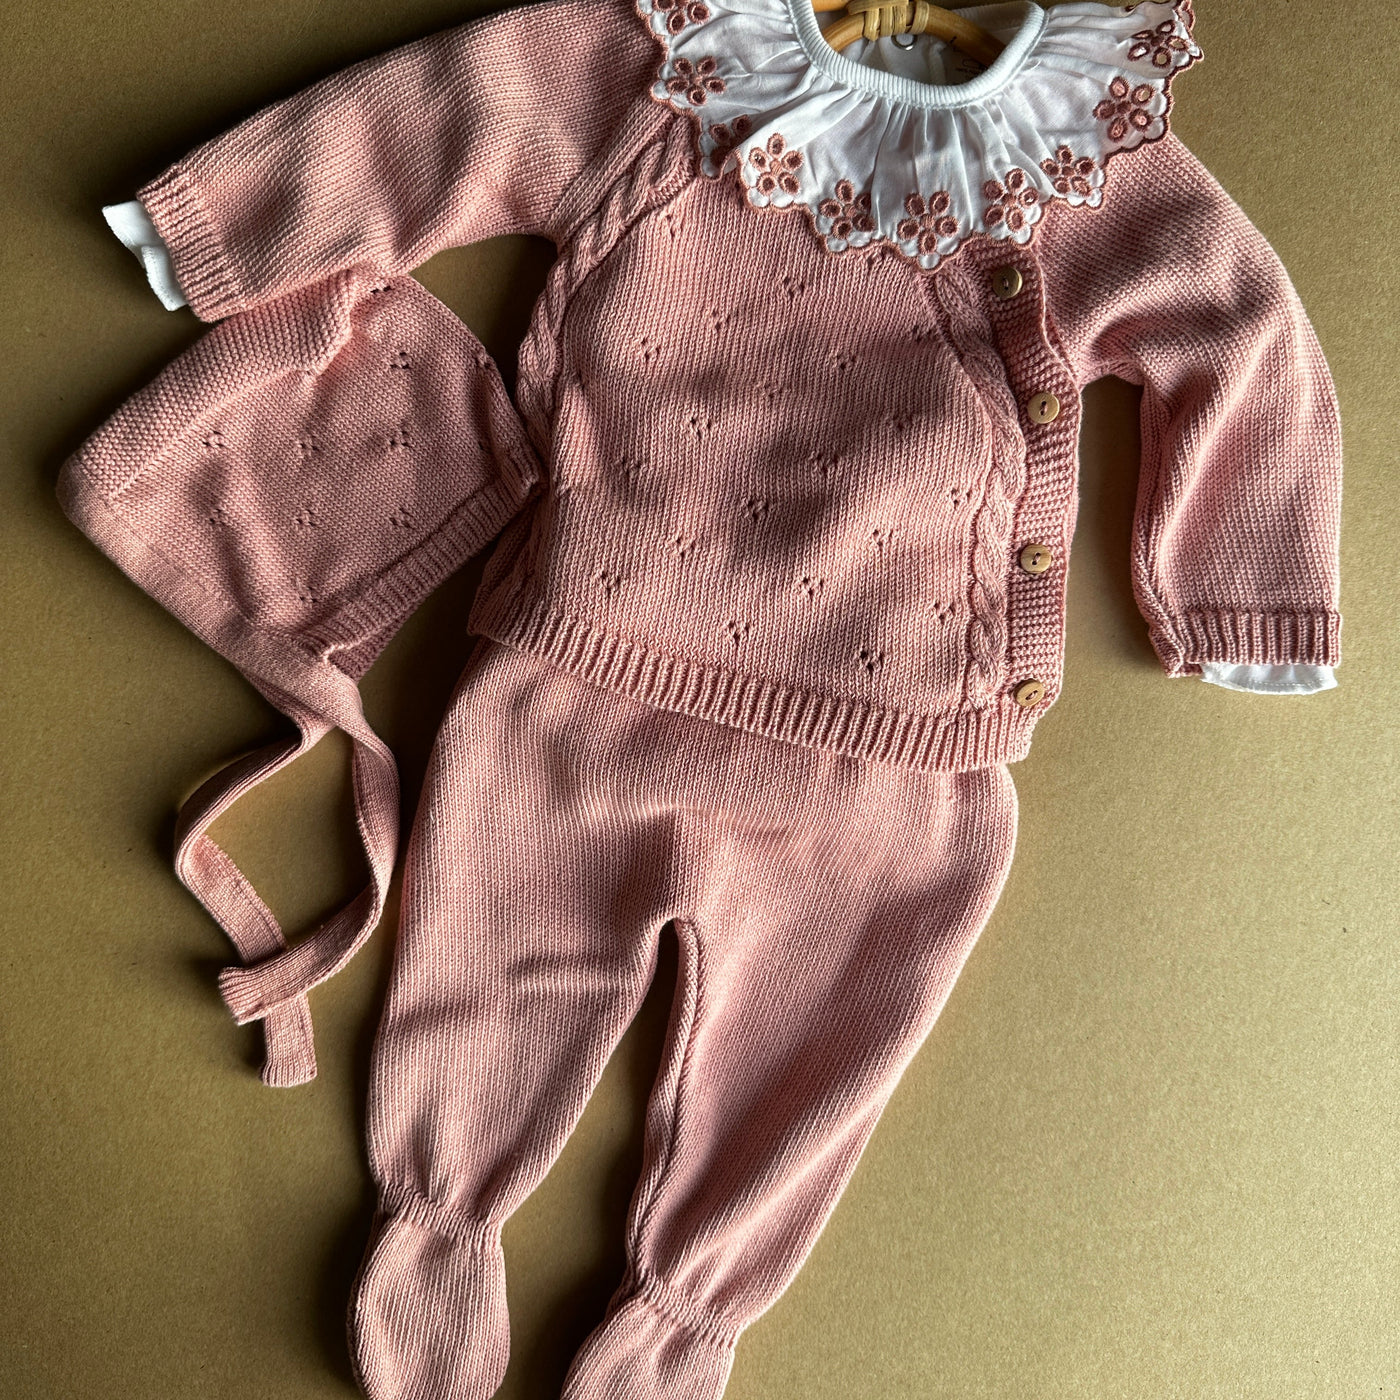 Completino lavorazione a maglia pointelle in Cotone 3 pezzi - Baby Clothes - Baby Rainbow Shop - P.IVA 04847500230